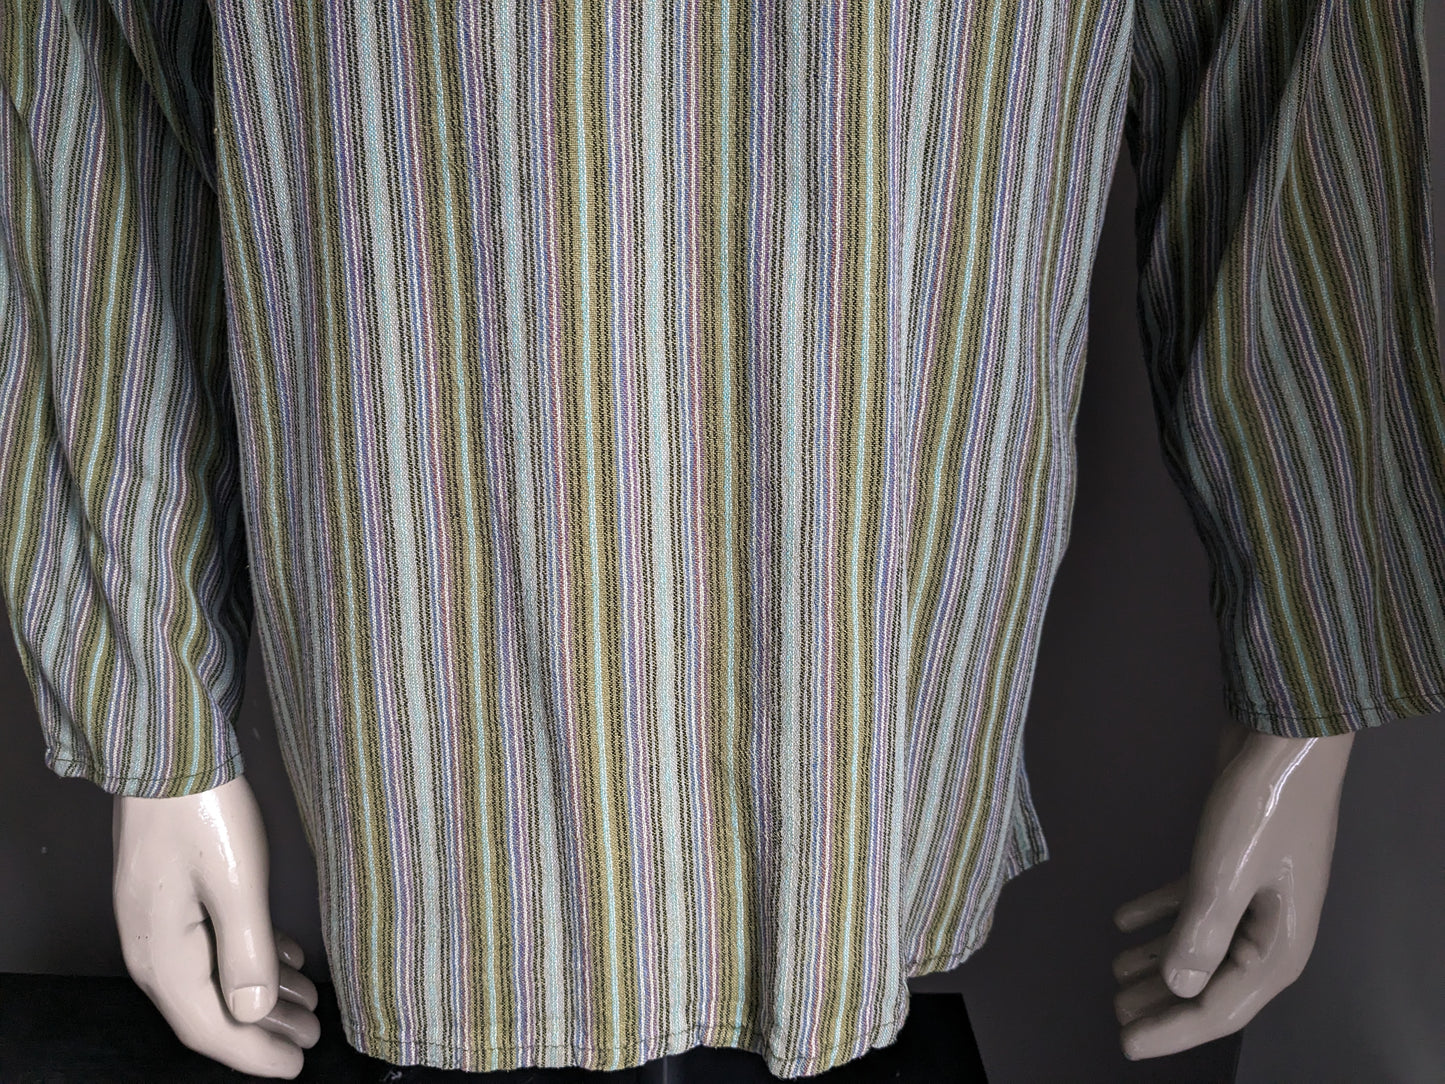 Suéter / camisa de polo vintage con cuello elevado / agricultores / mao. Verde morado marrón azul rayado con bolsa. Tamaño xl.